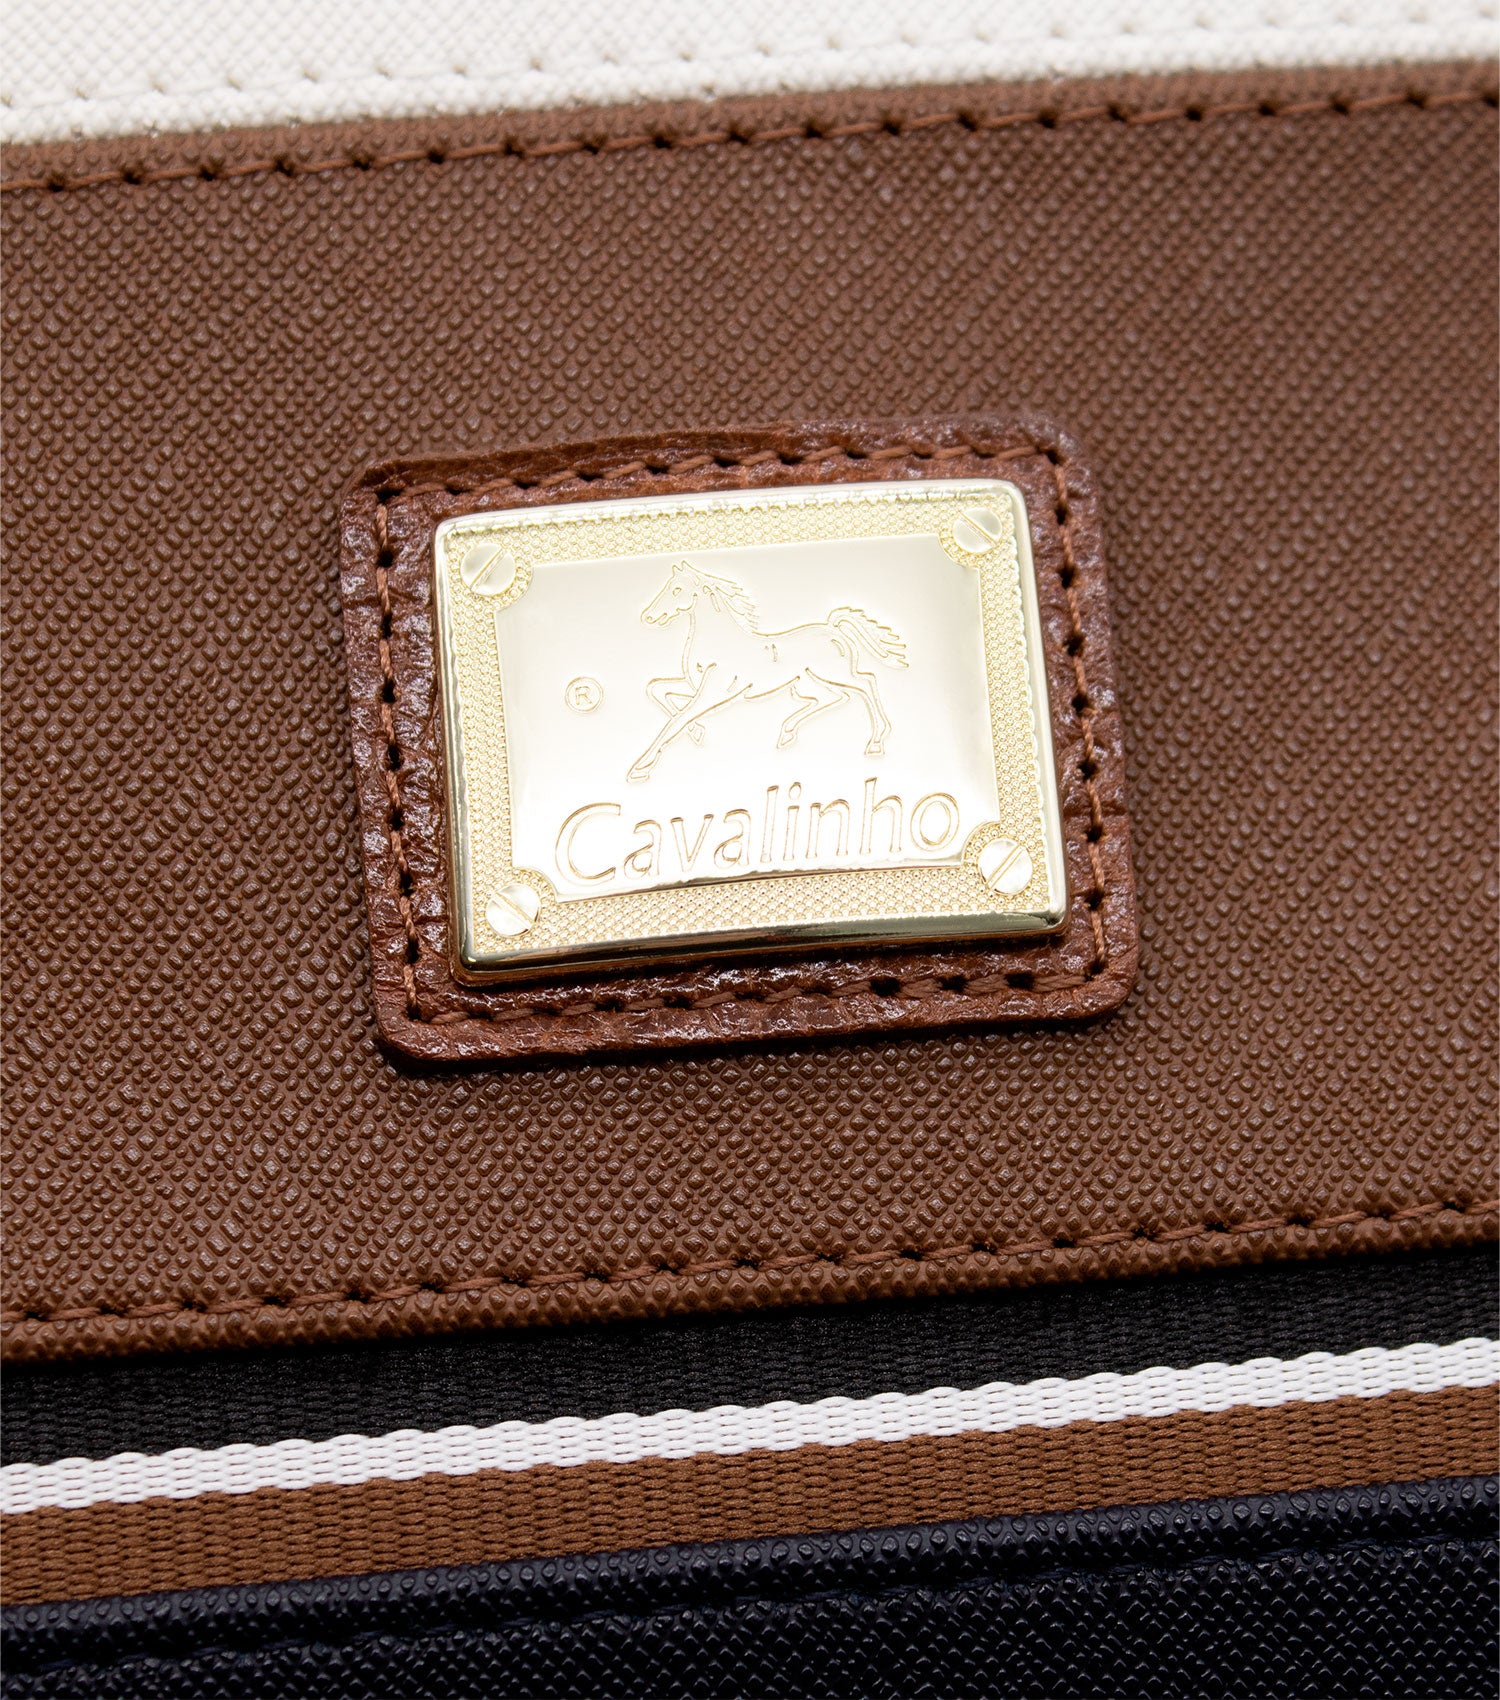 Cavalinho Unique Handbag - SaddleBrown - 18260408.34_P04